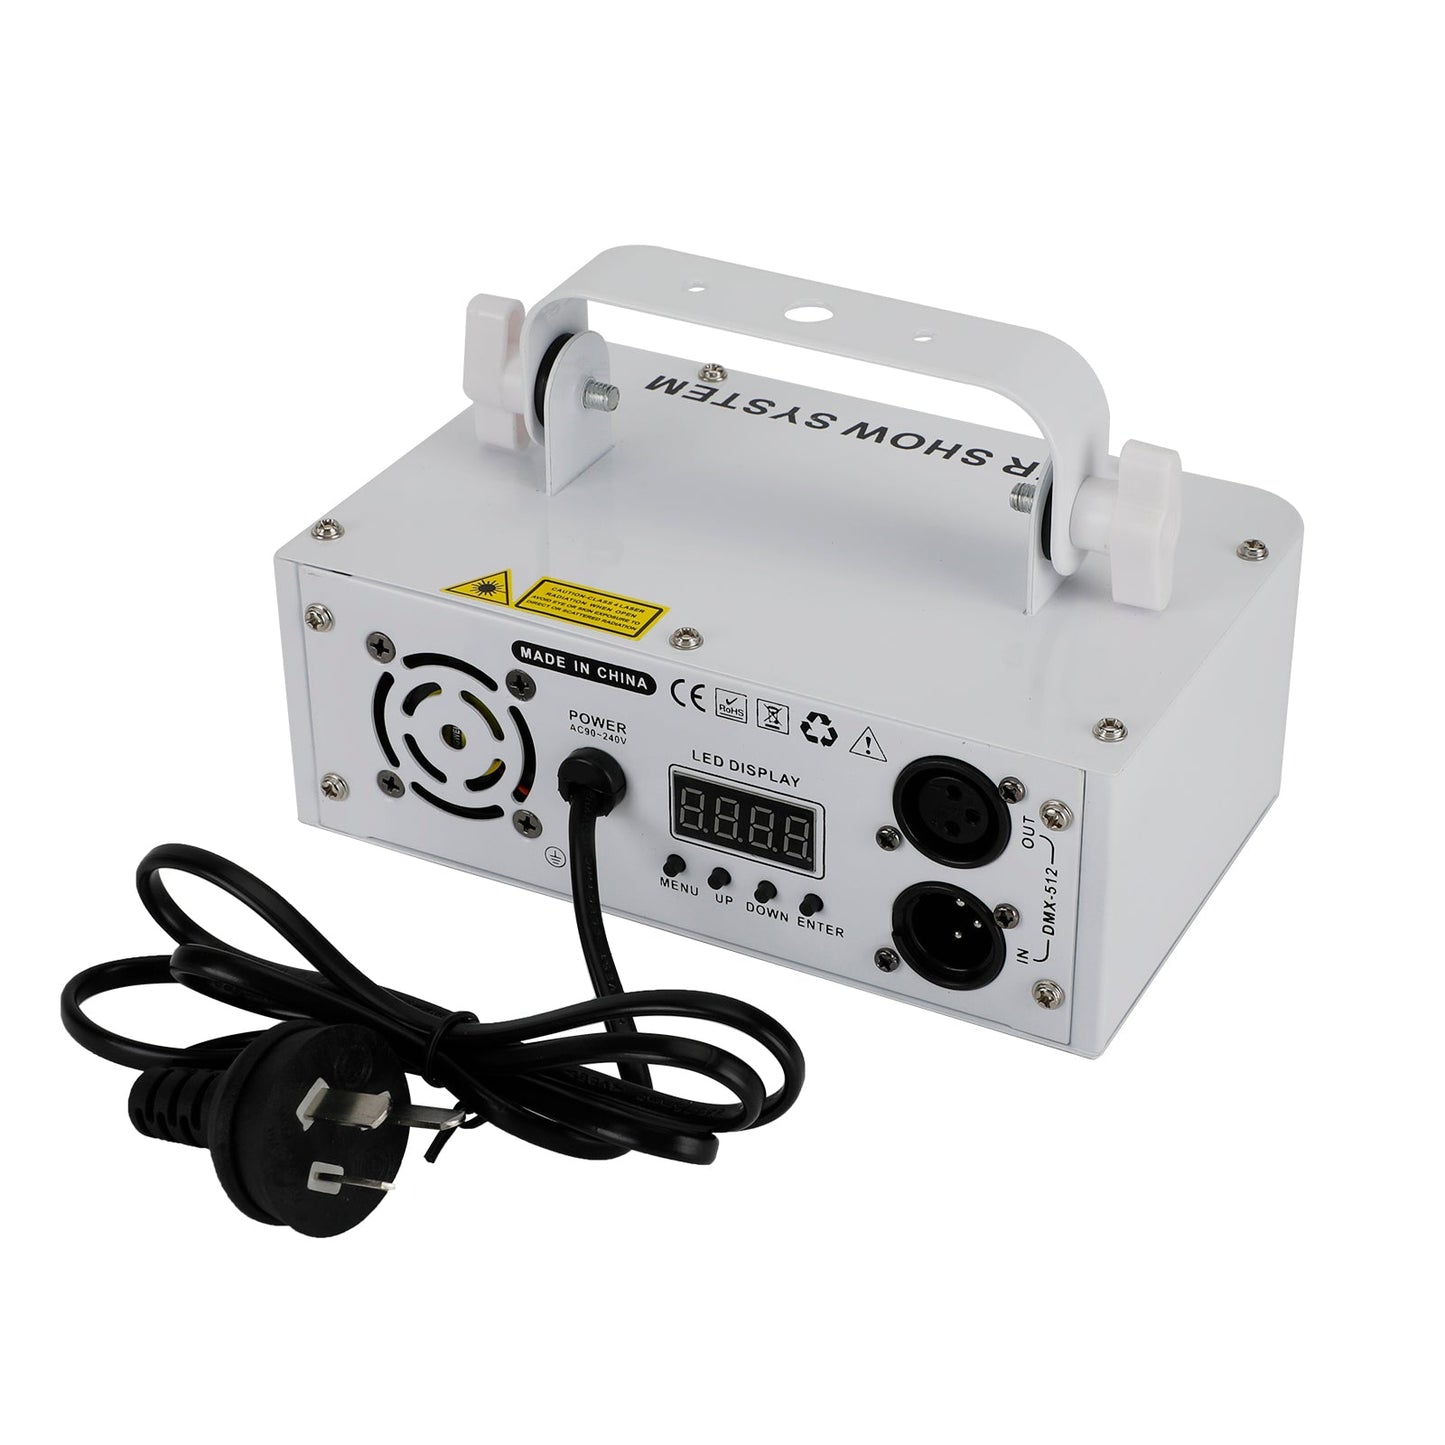 Wei? 500mW DMX RGB LED Laserstrahl Scanner Projektor Party Stage Laserlicht AU